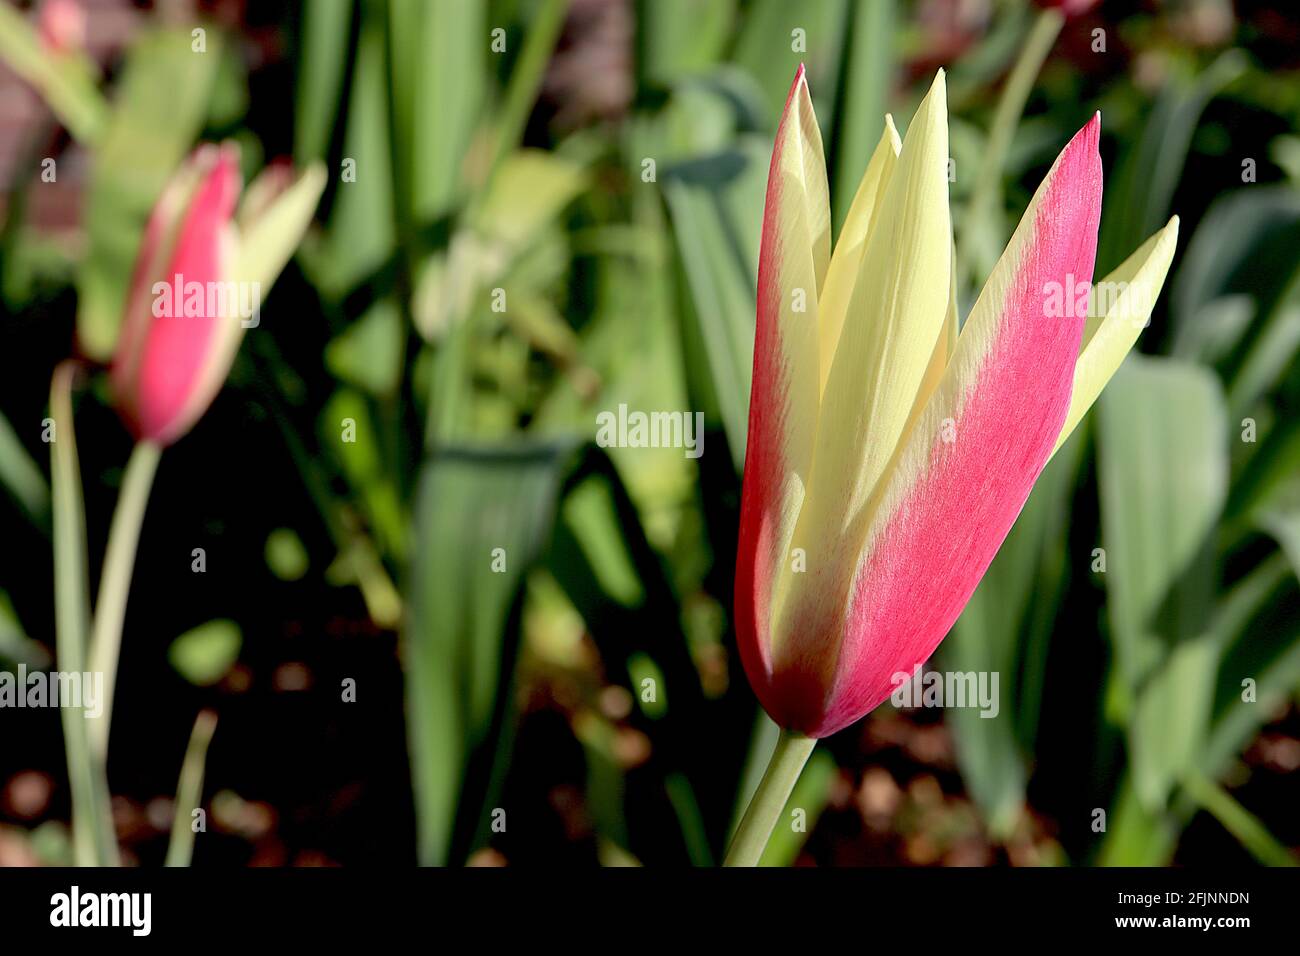 Tulipa clusiana ‘Cynthia’ specie tulipano 15 Cynthia tulipano - fiori rossi corallini, bordi gialli cremosi, aprile, Inghilterra, Regno Unito Foto Stock